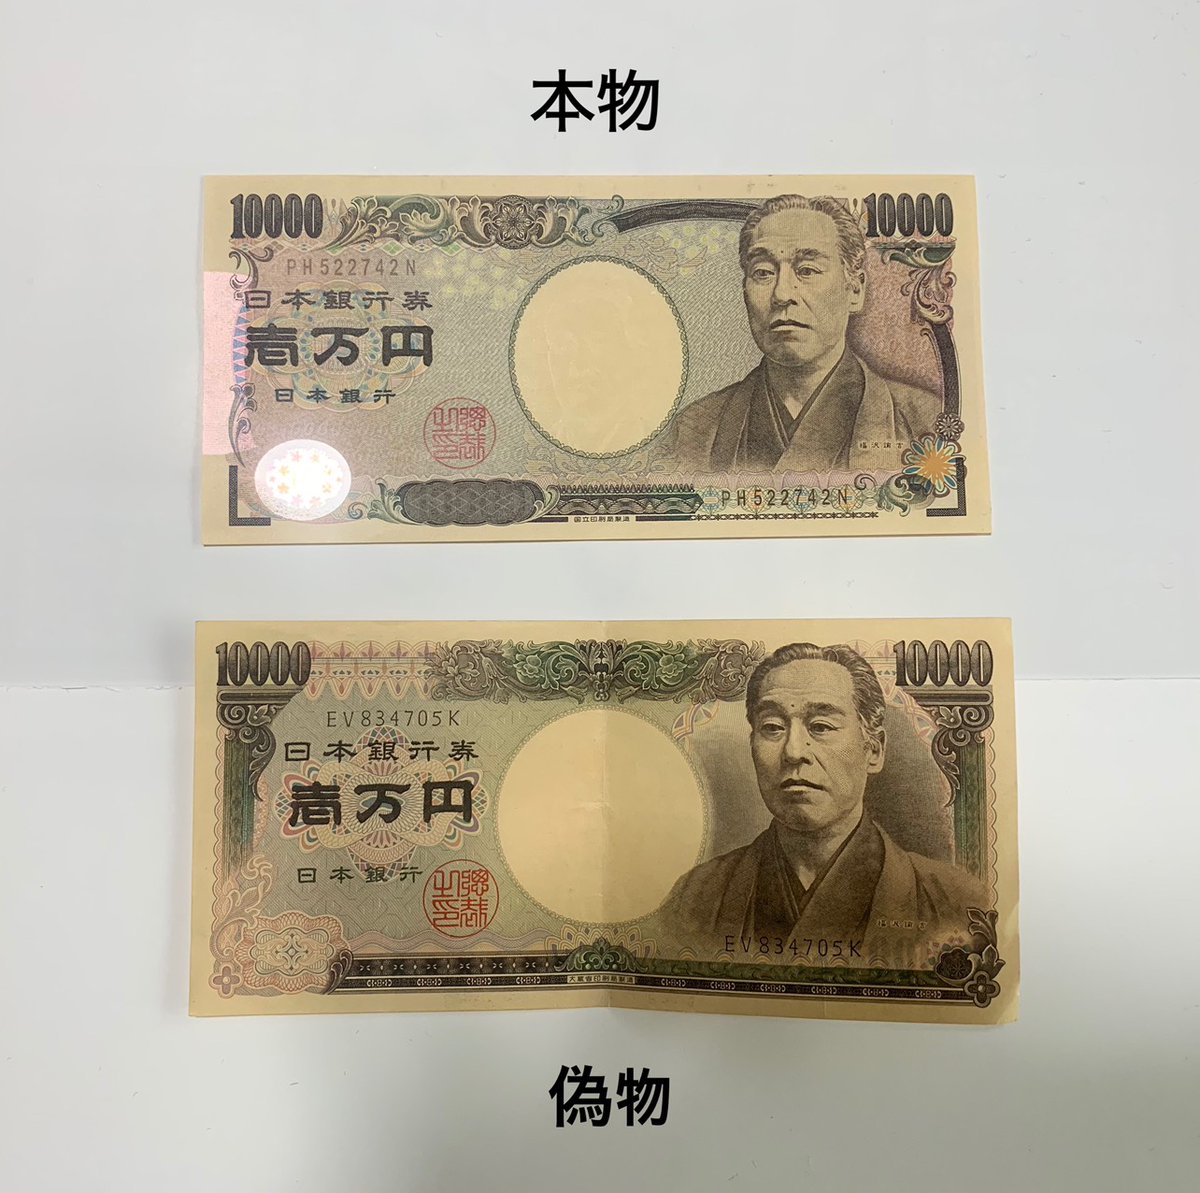 偽造された1万円札発見 それ旧札 棘を抜く